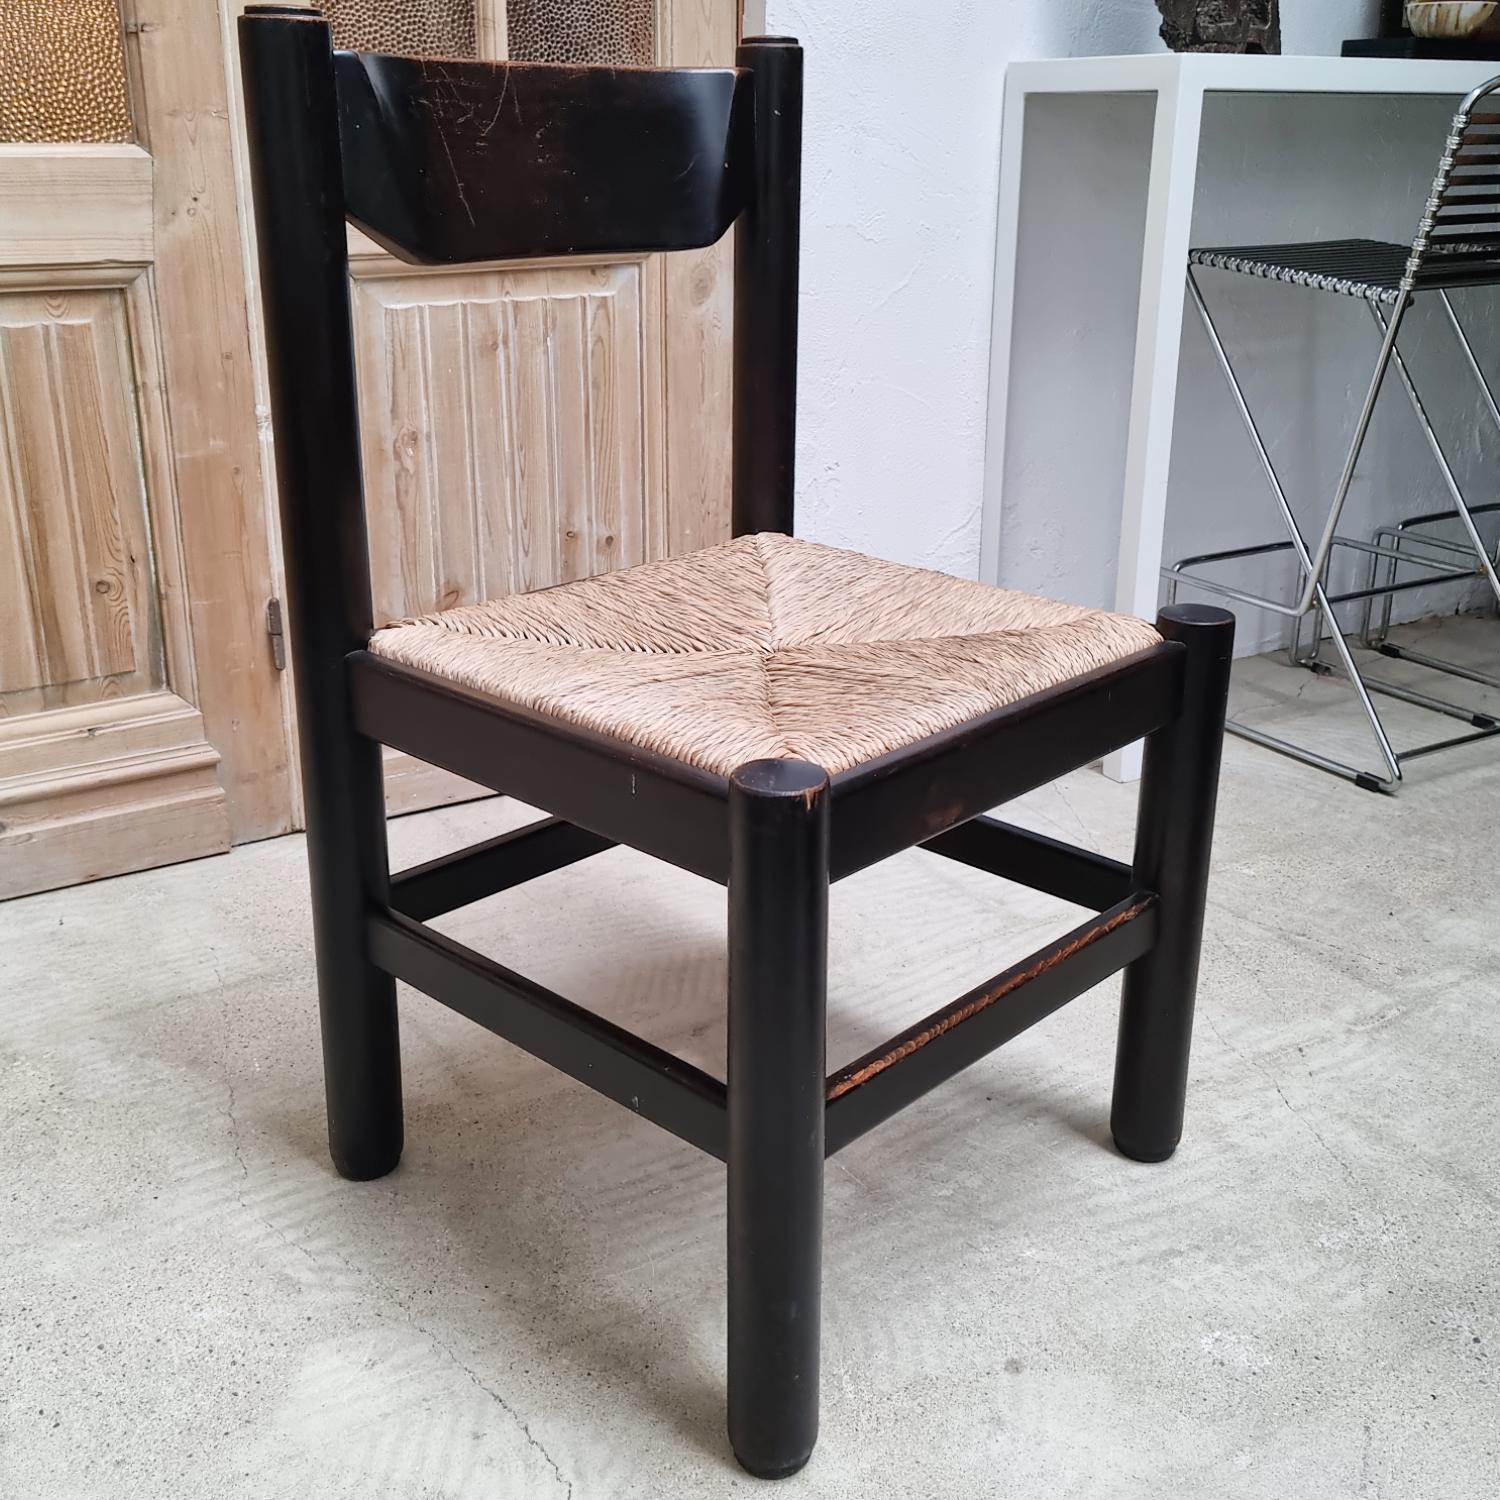 Ensemble décoratif et contemporain de chaises de salle à manger attribué à Vico Magistretti. Fabriqué en bois massif, peint en noir et siège en jonc. S'intègre parfaitement dans les intérieurs où sont utilisés des matériaux honnêtes et naturels.

La